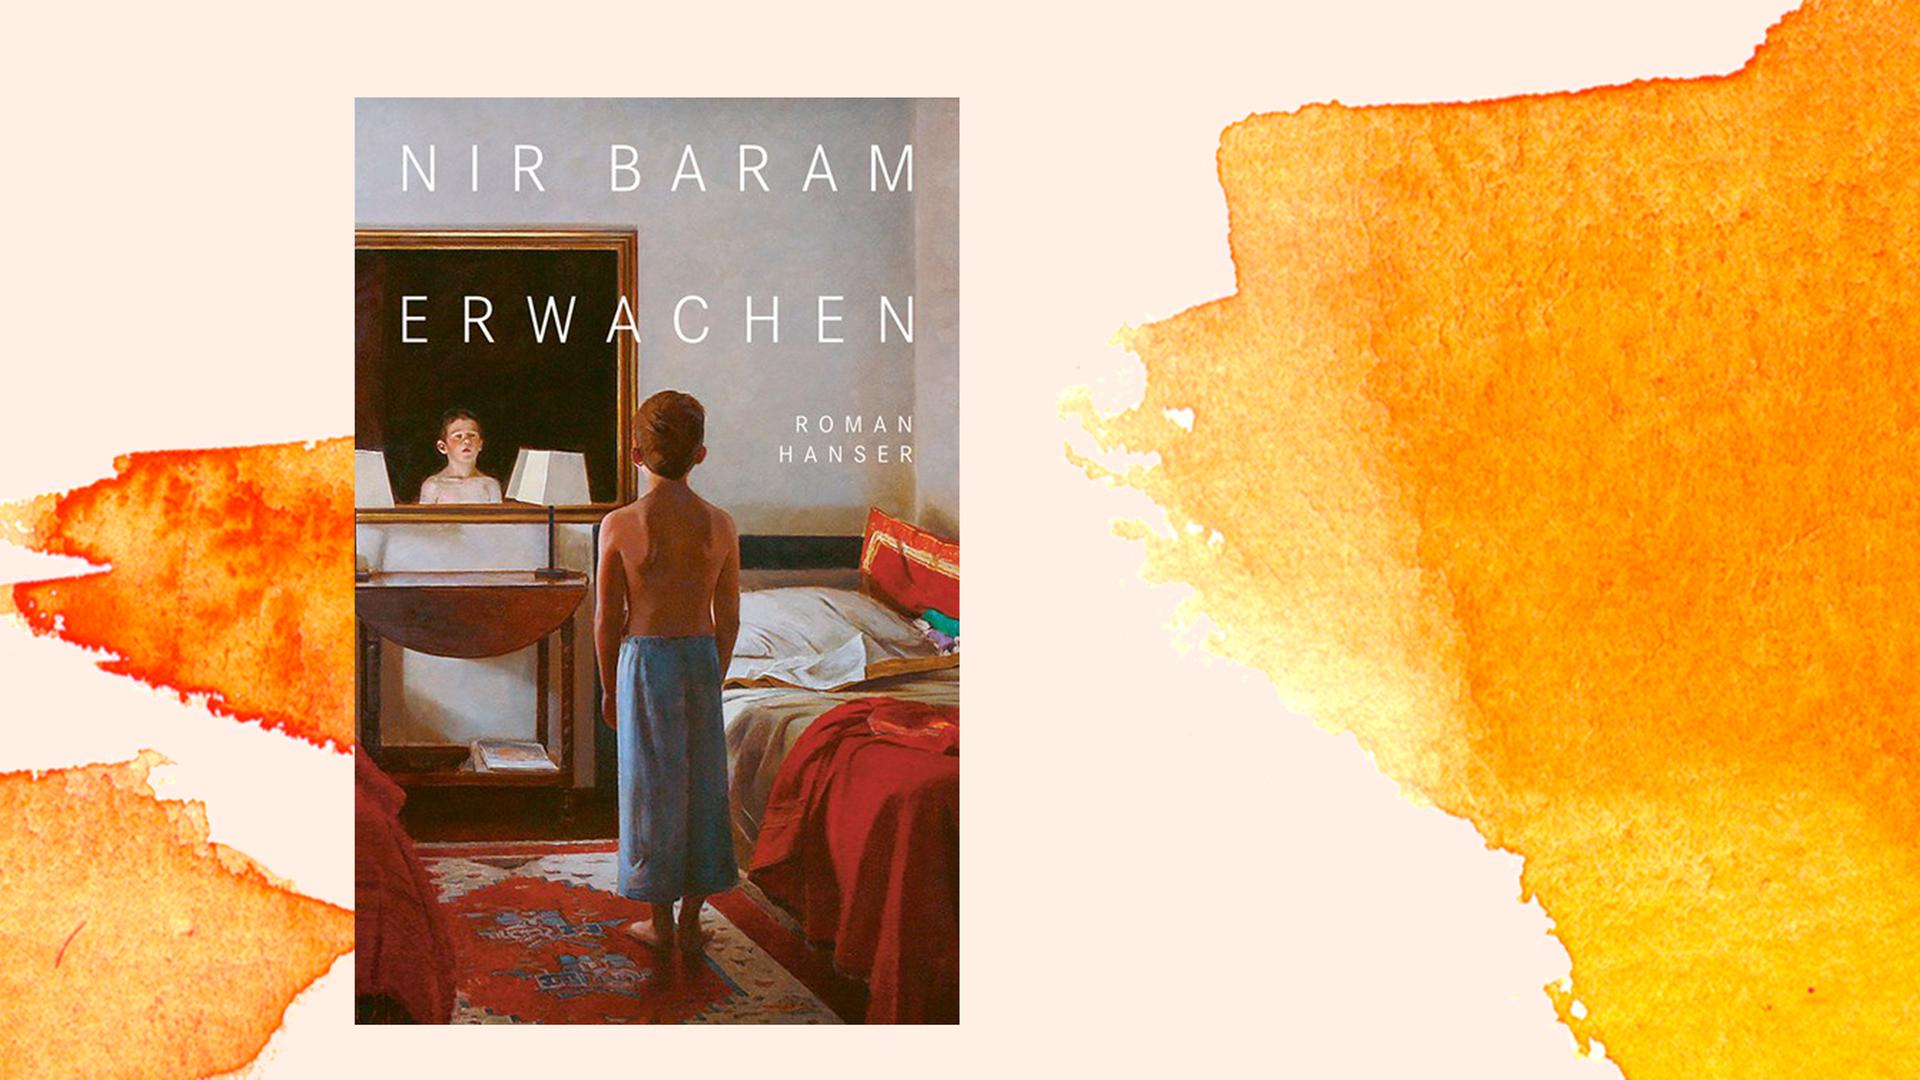 Zu sehen ist das Cover des Romans "Erwachen" des Schriftstellers Nir Baram.